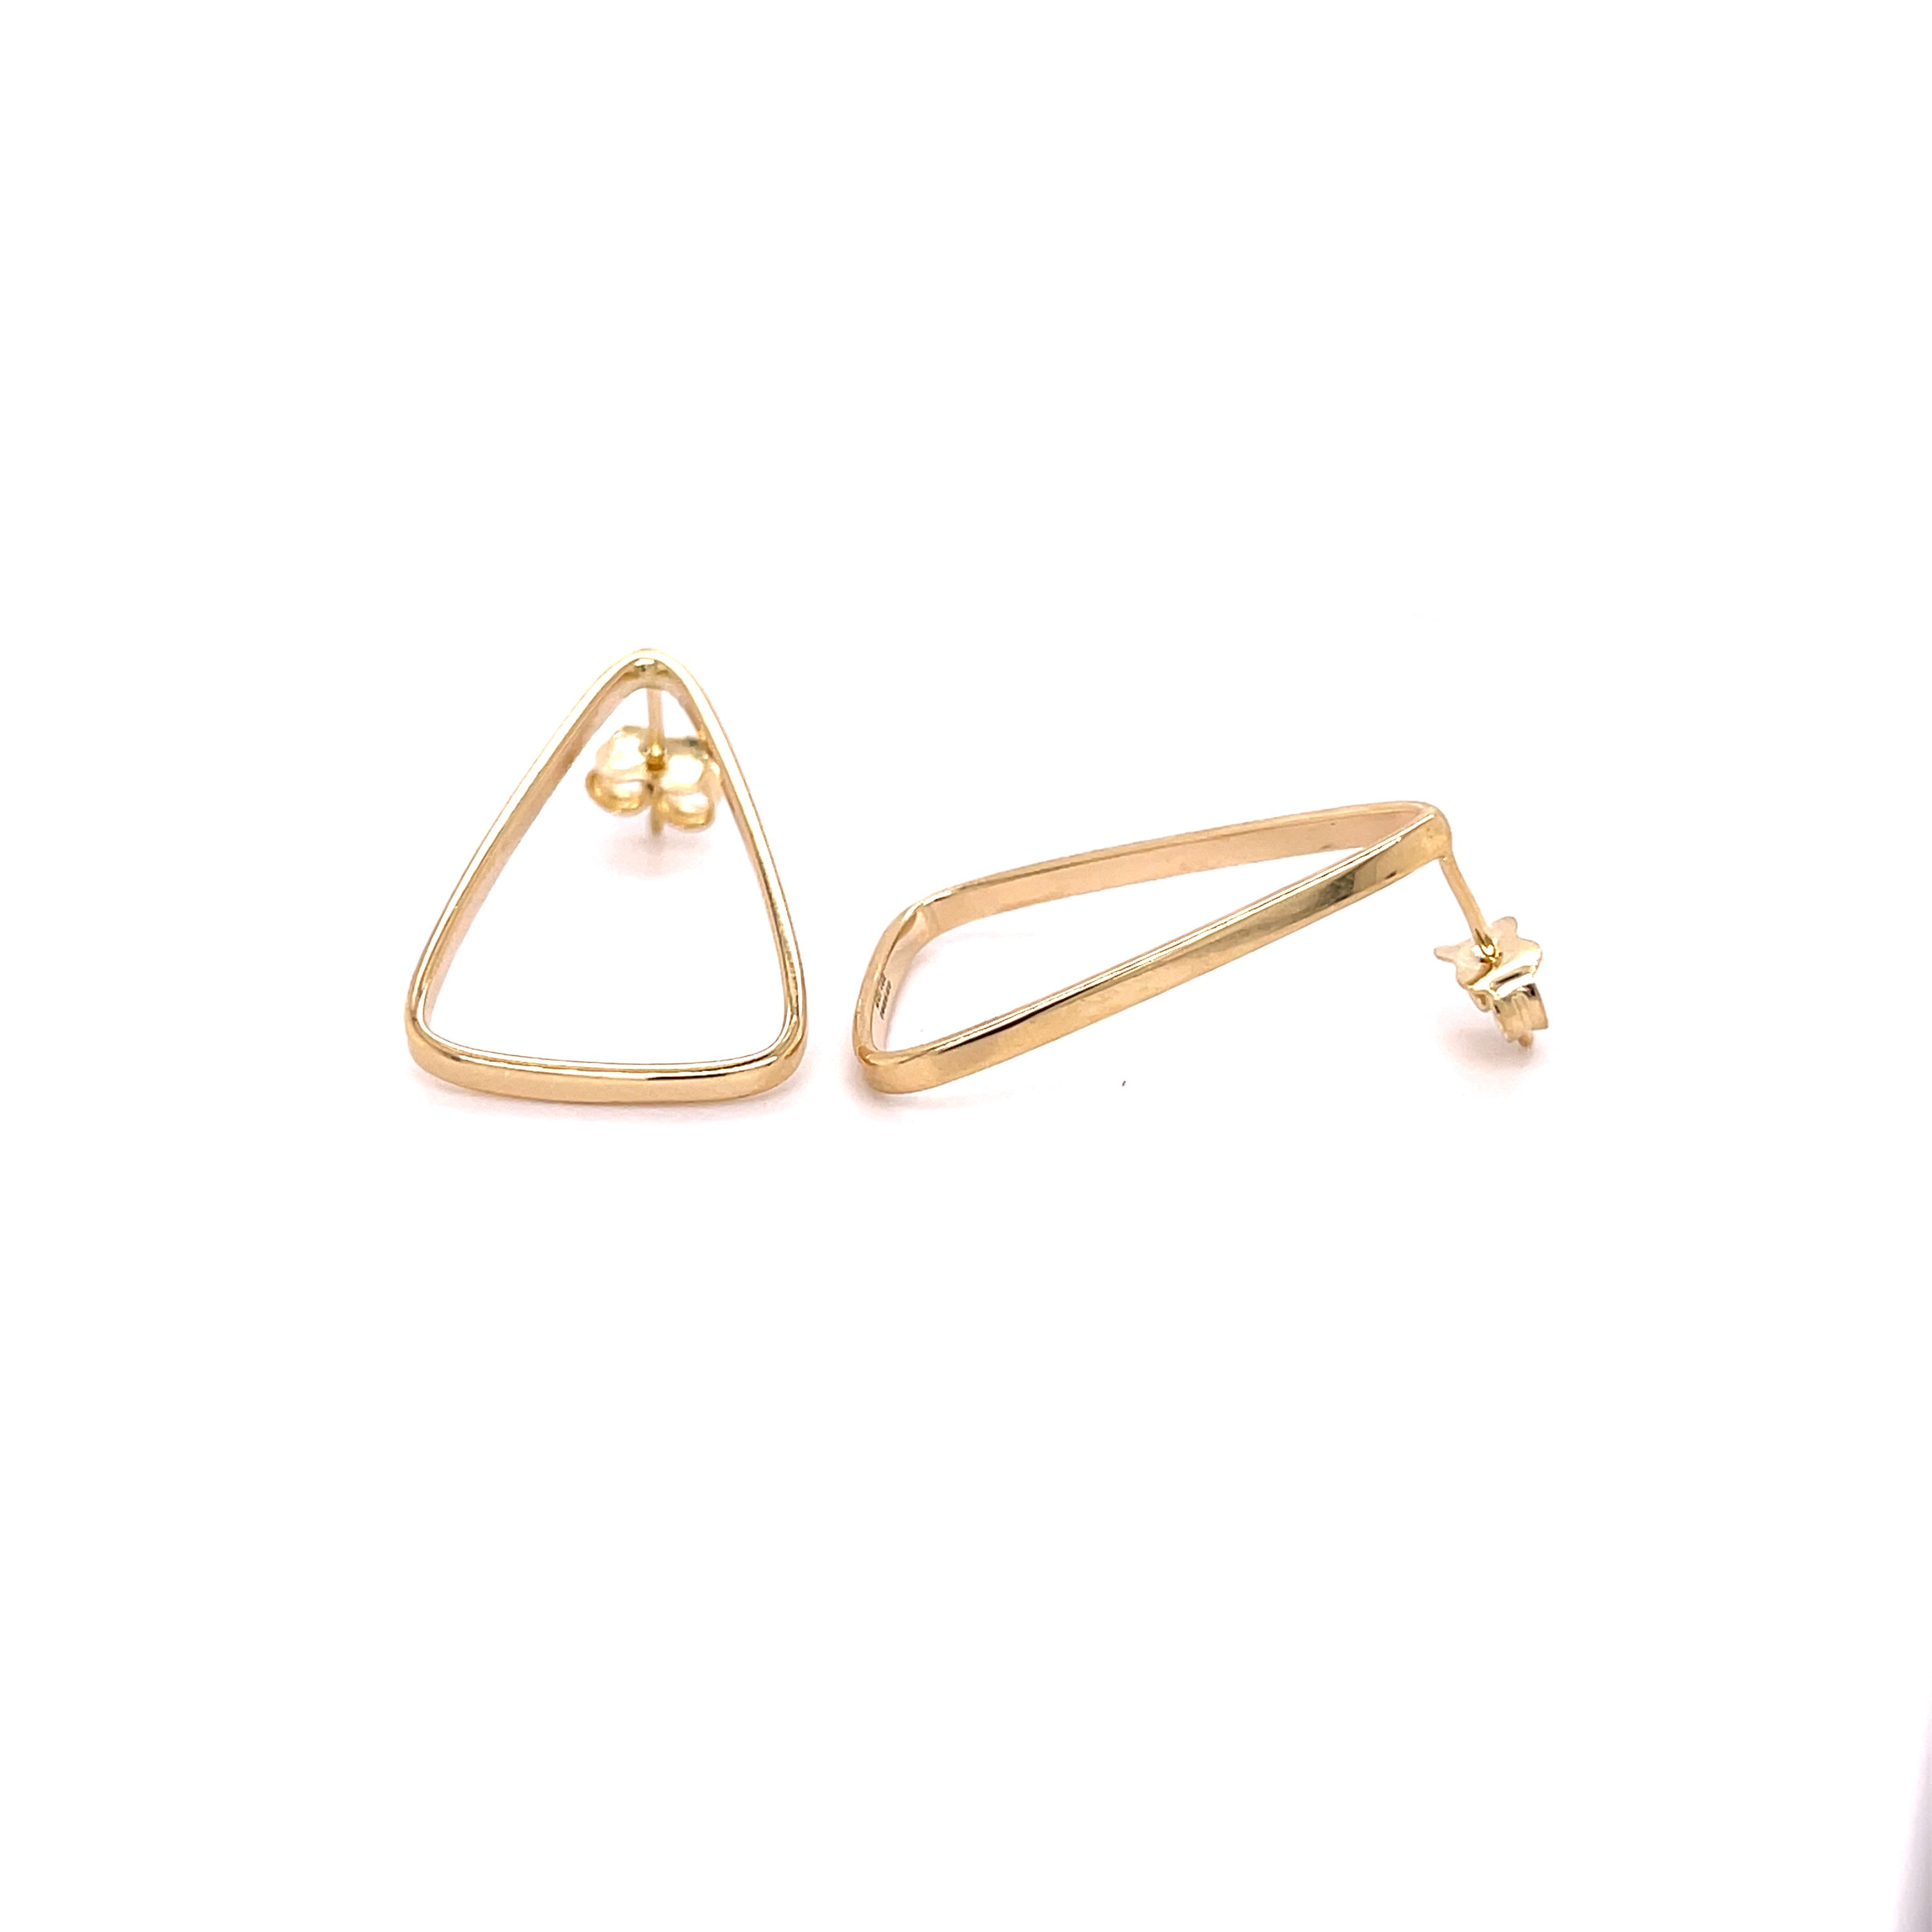 Large 14K Gold Open Triangle Earrings